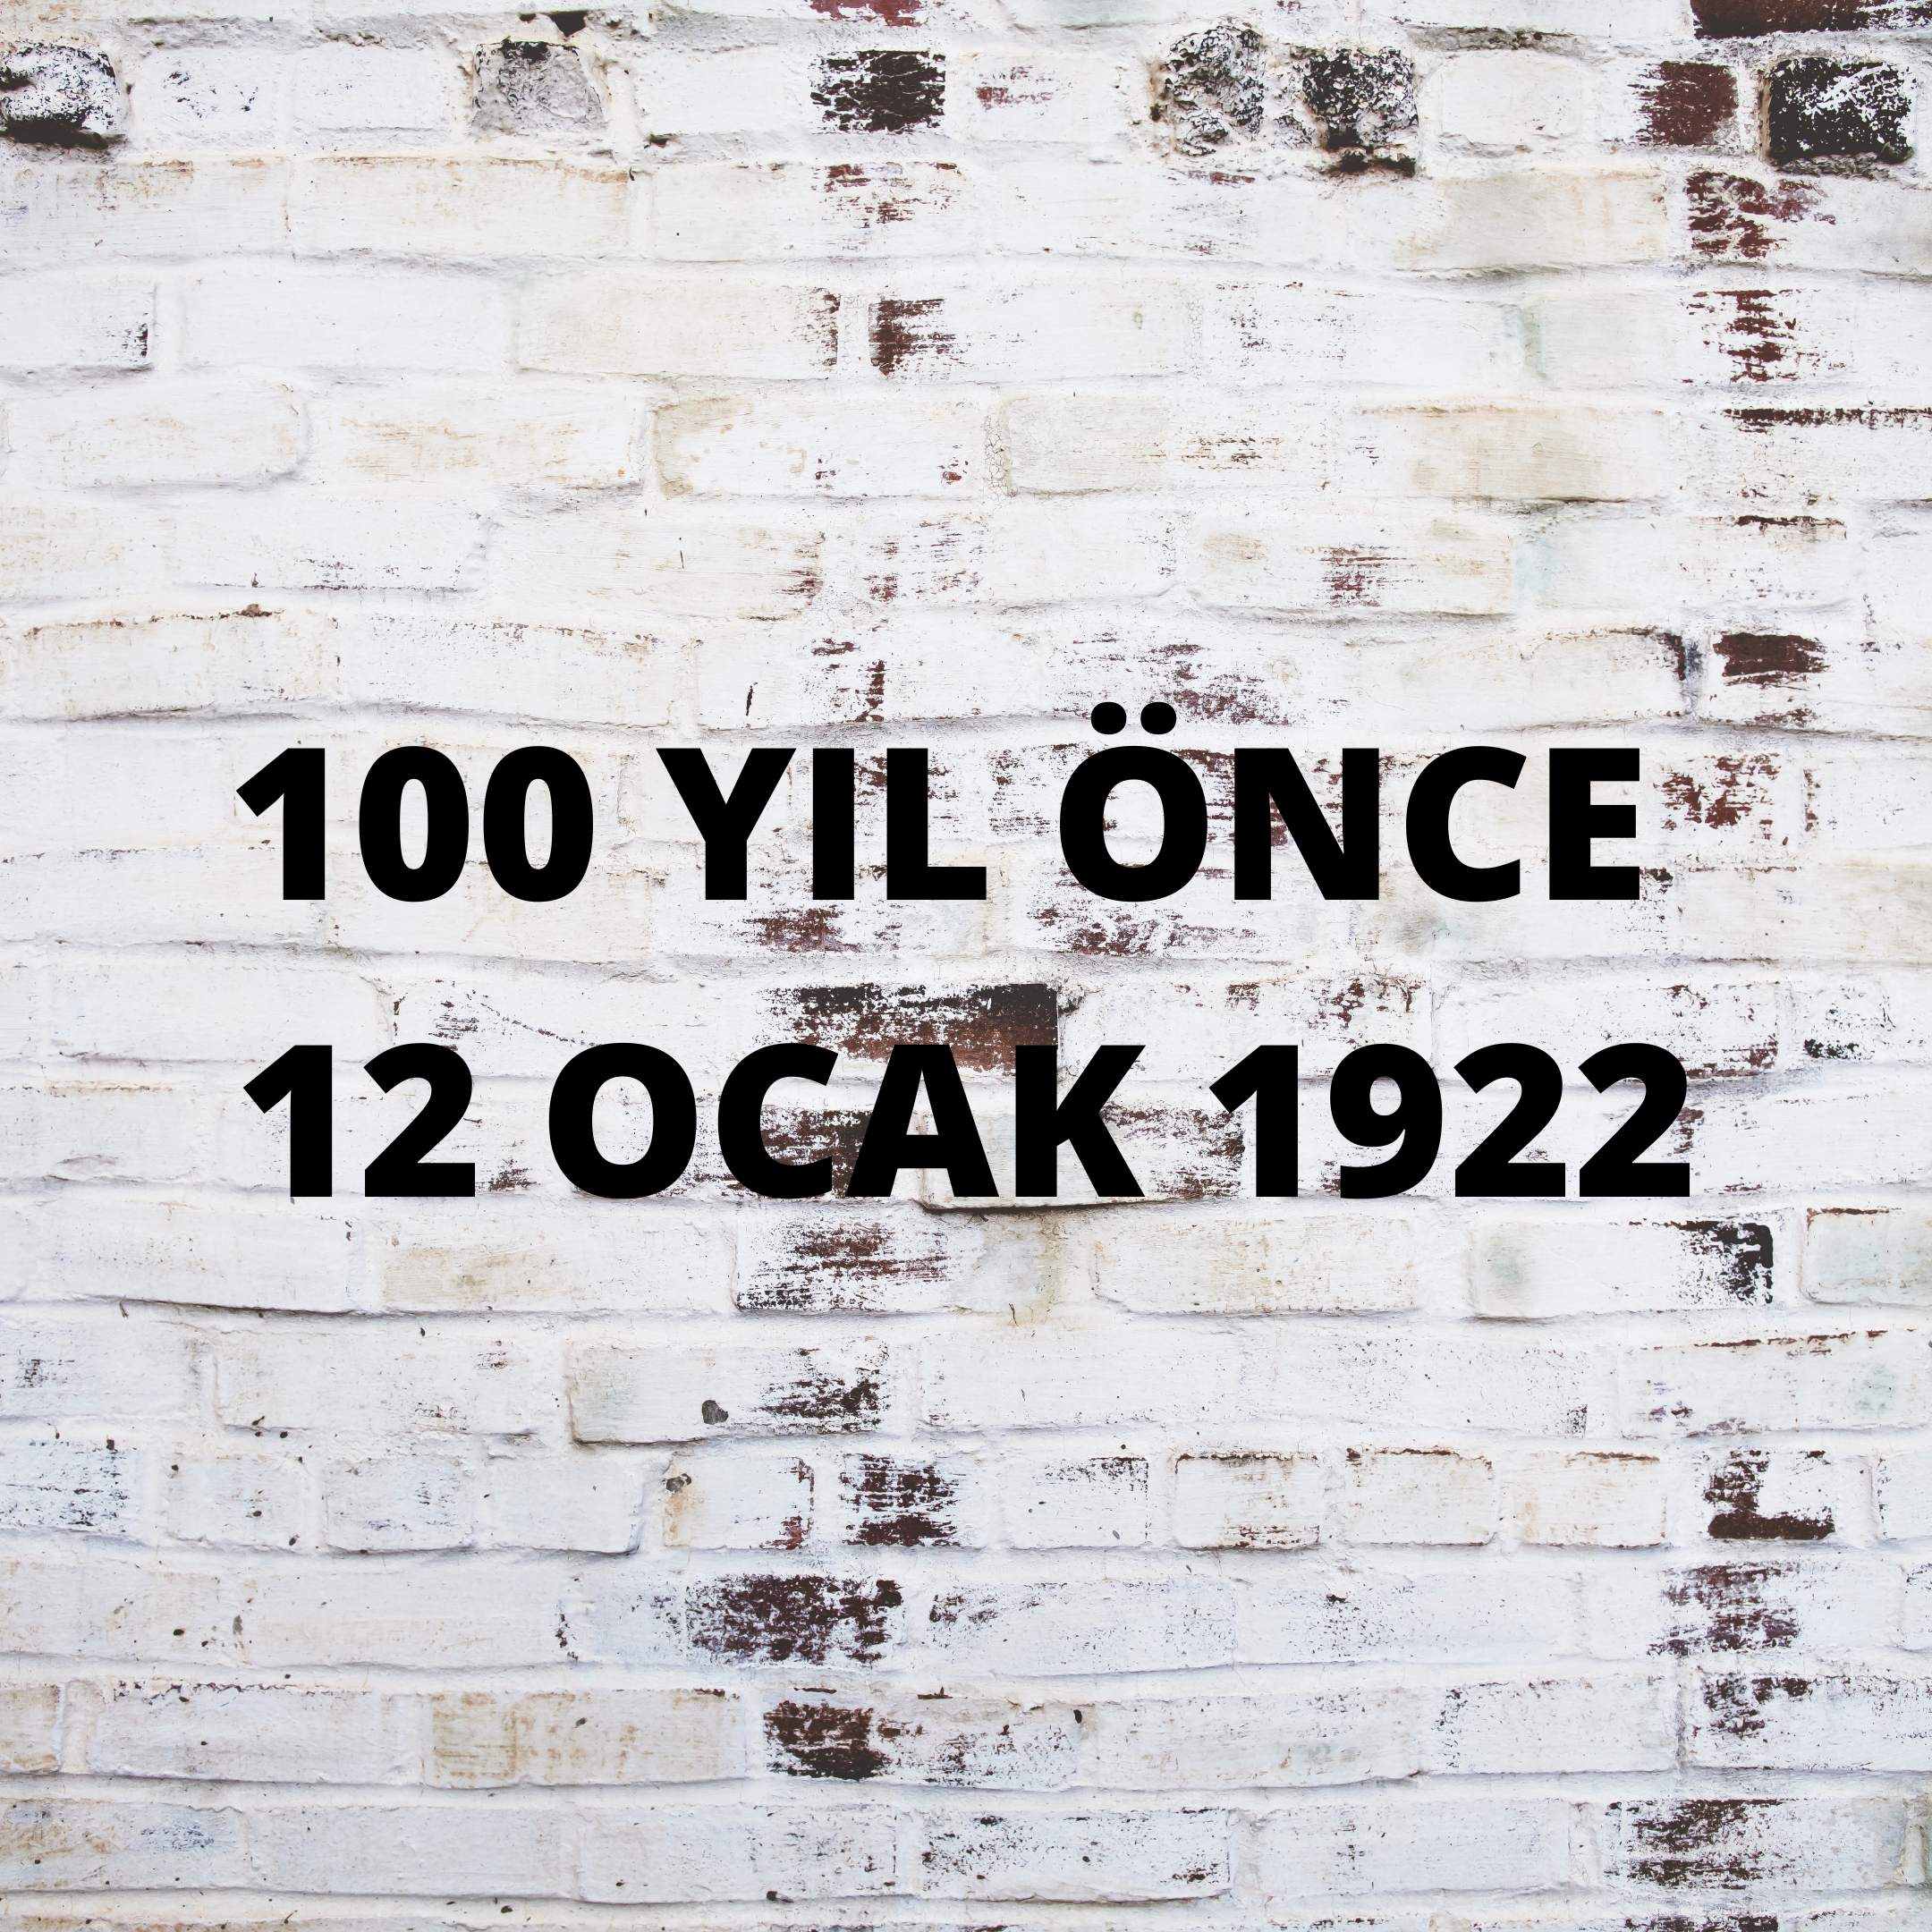 100 YIL ÖNCE 12 OCAK 1922